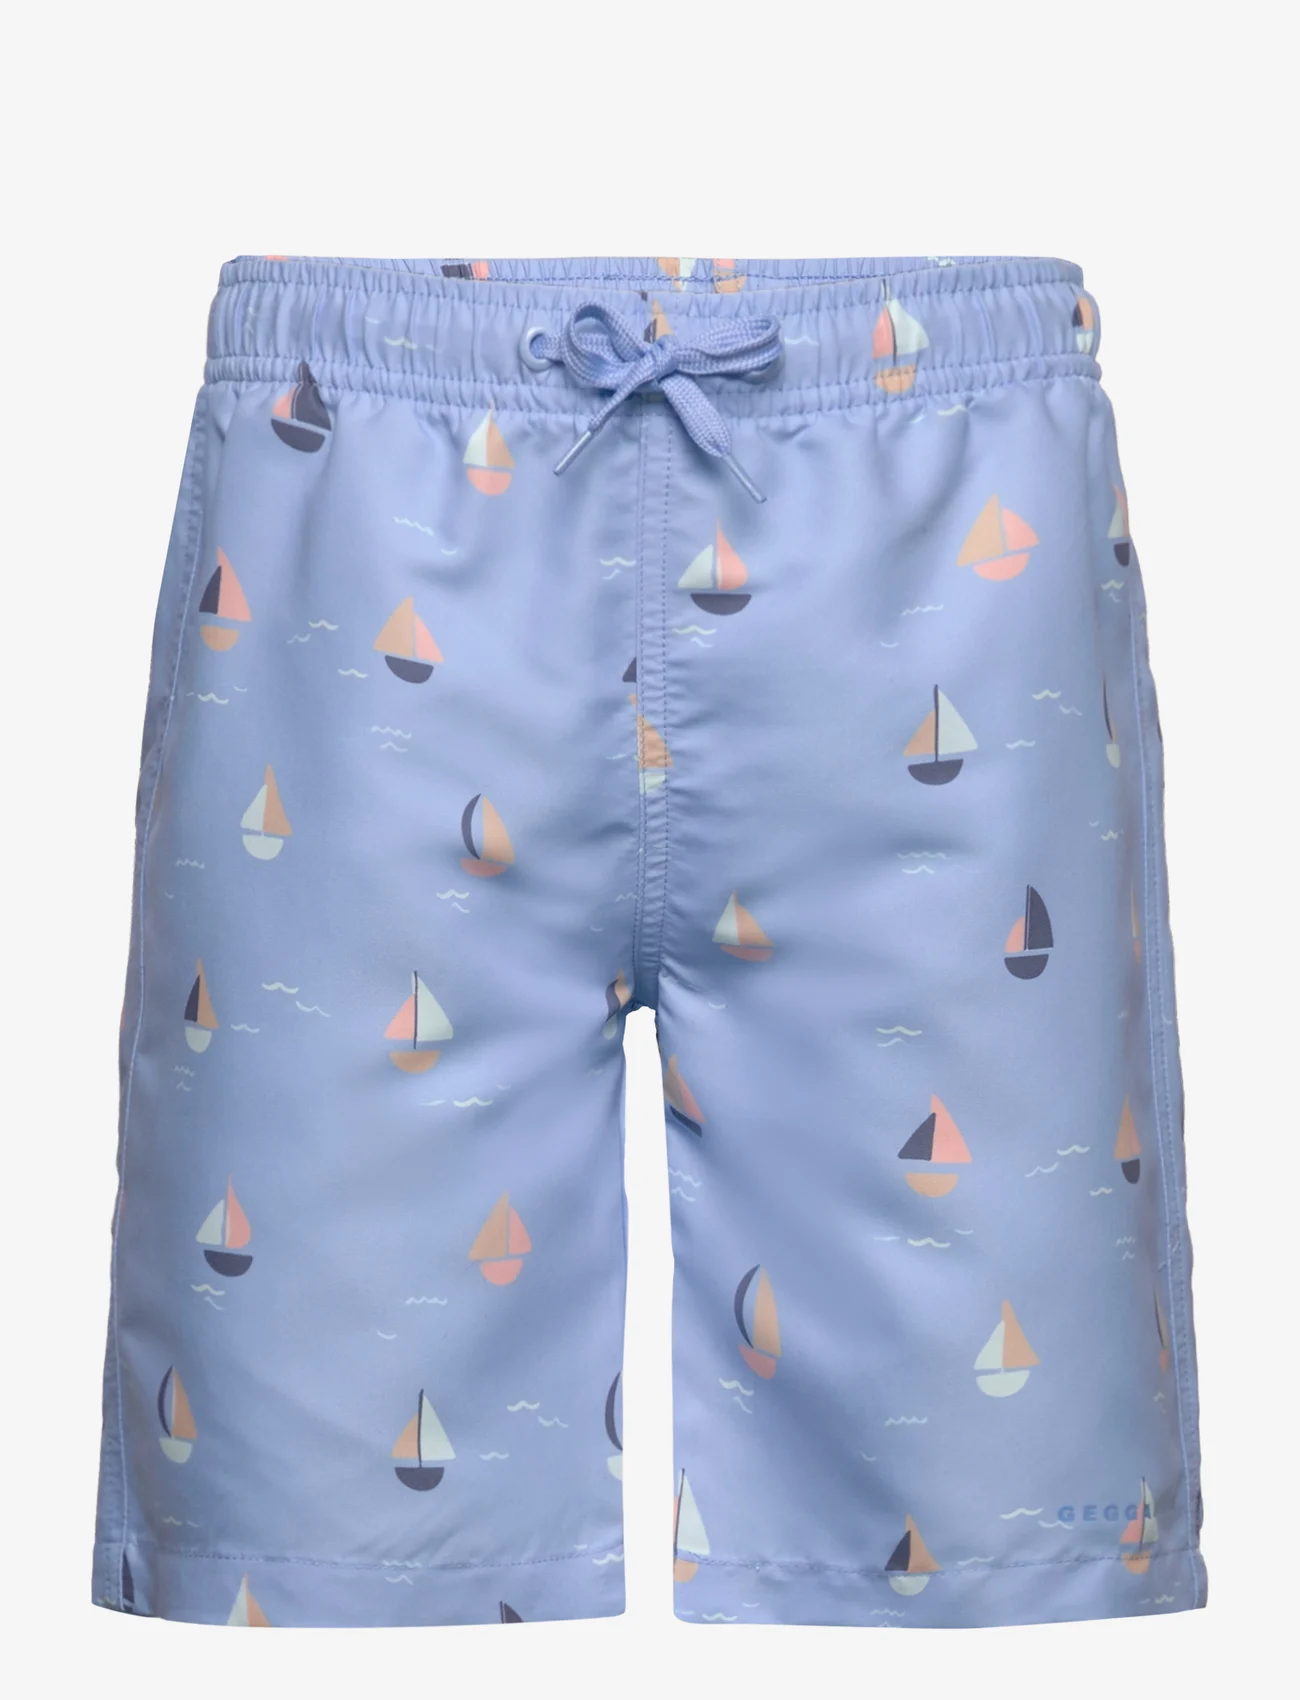 Geggamoja - UV-Swim shorts - gode sommertilbud - light blue sailor - 0